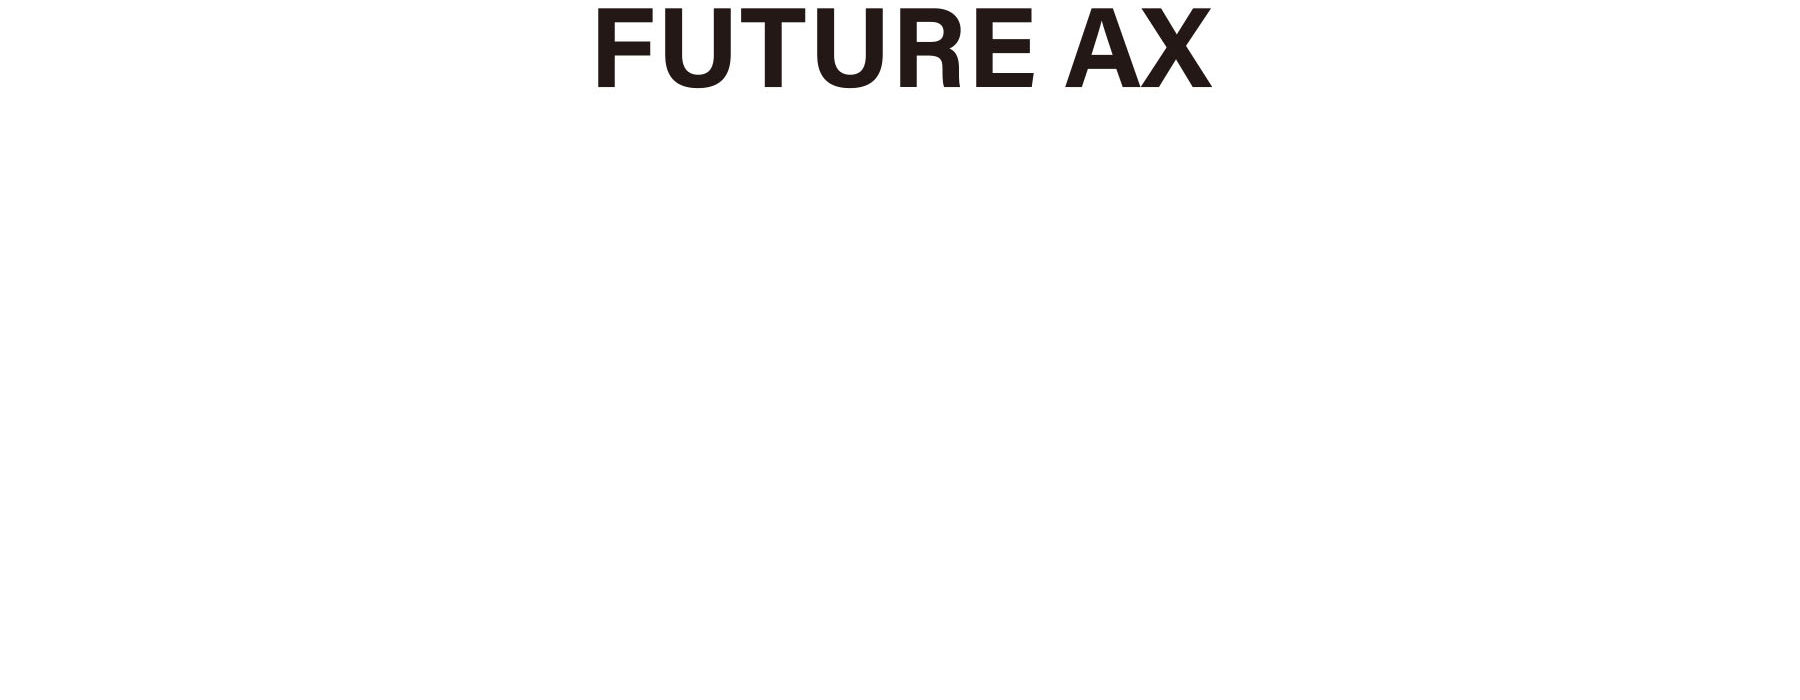 FUTURE AX